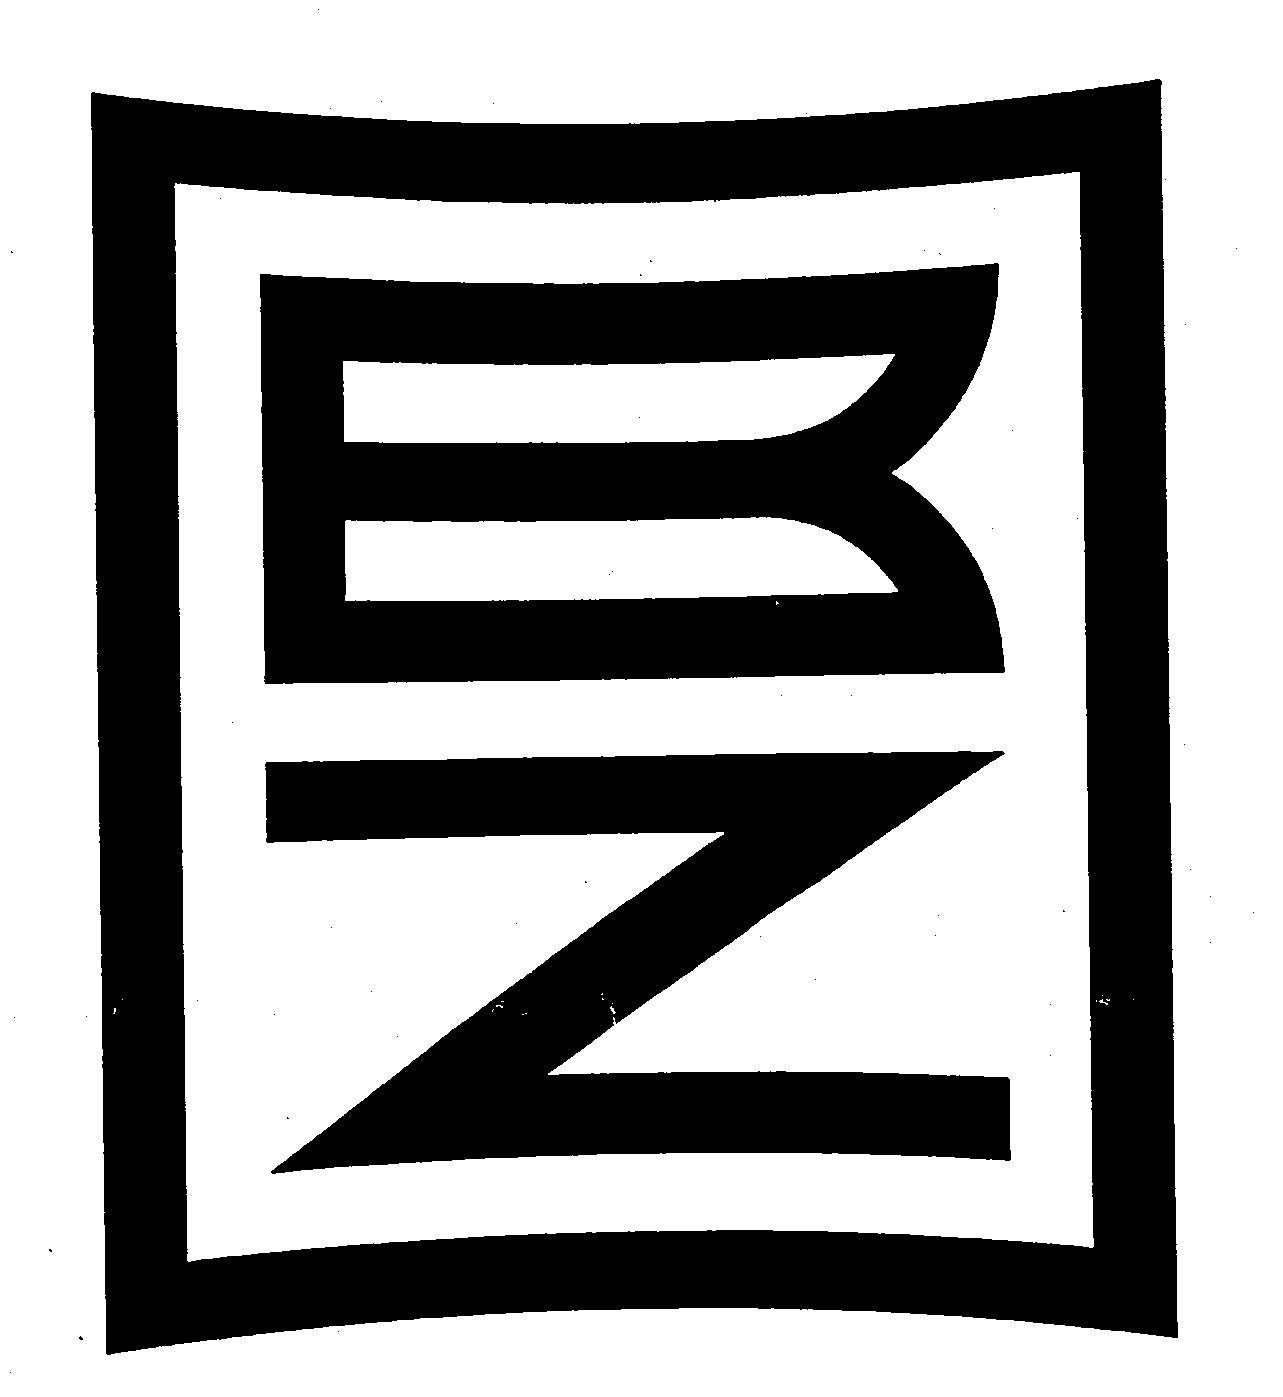  B Z